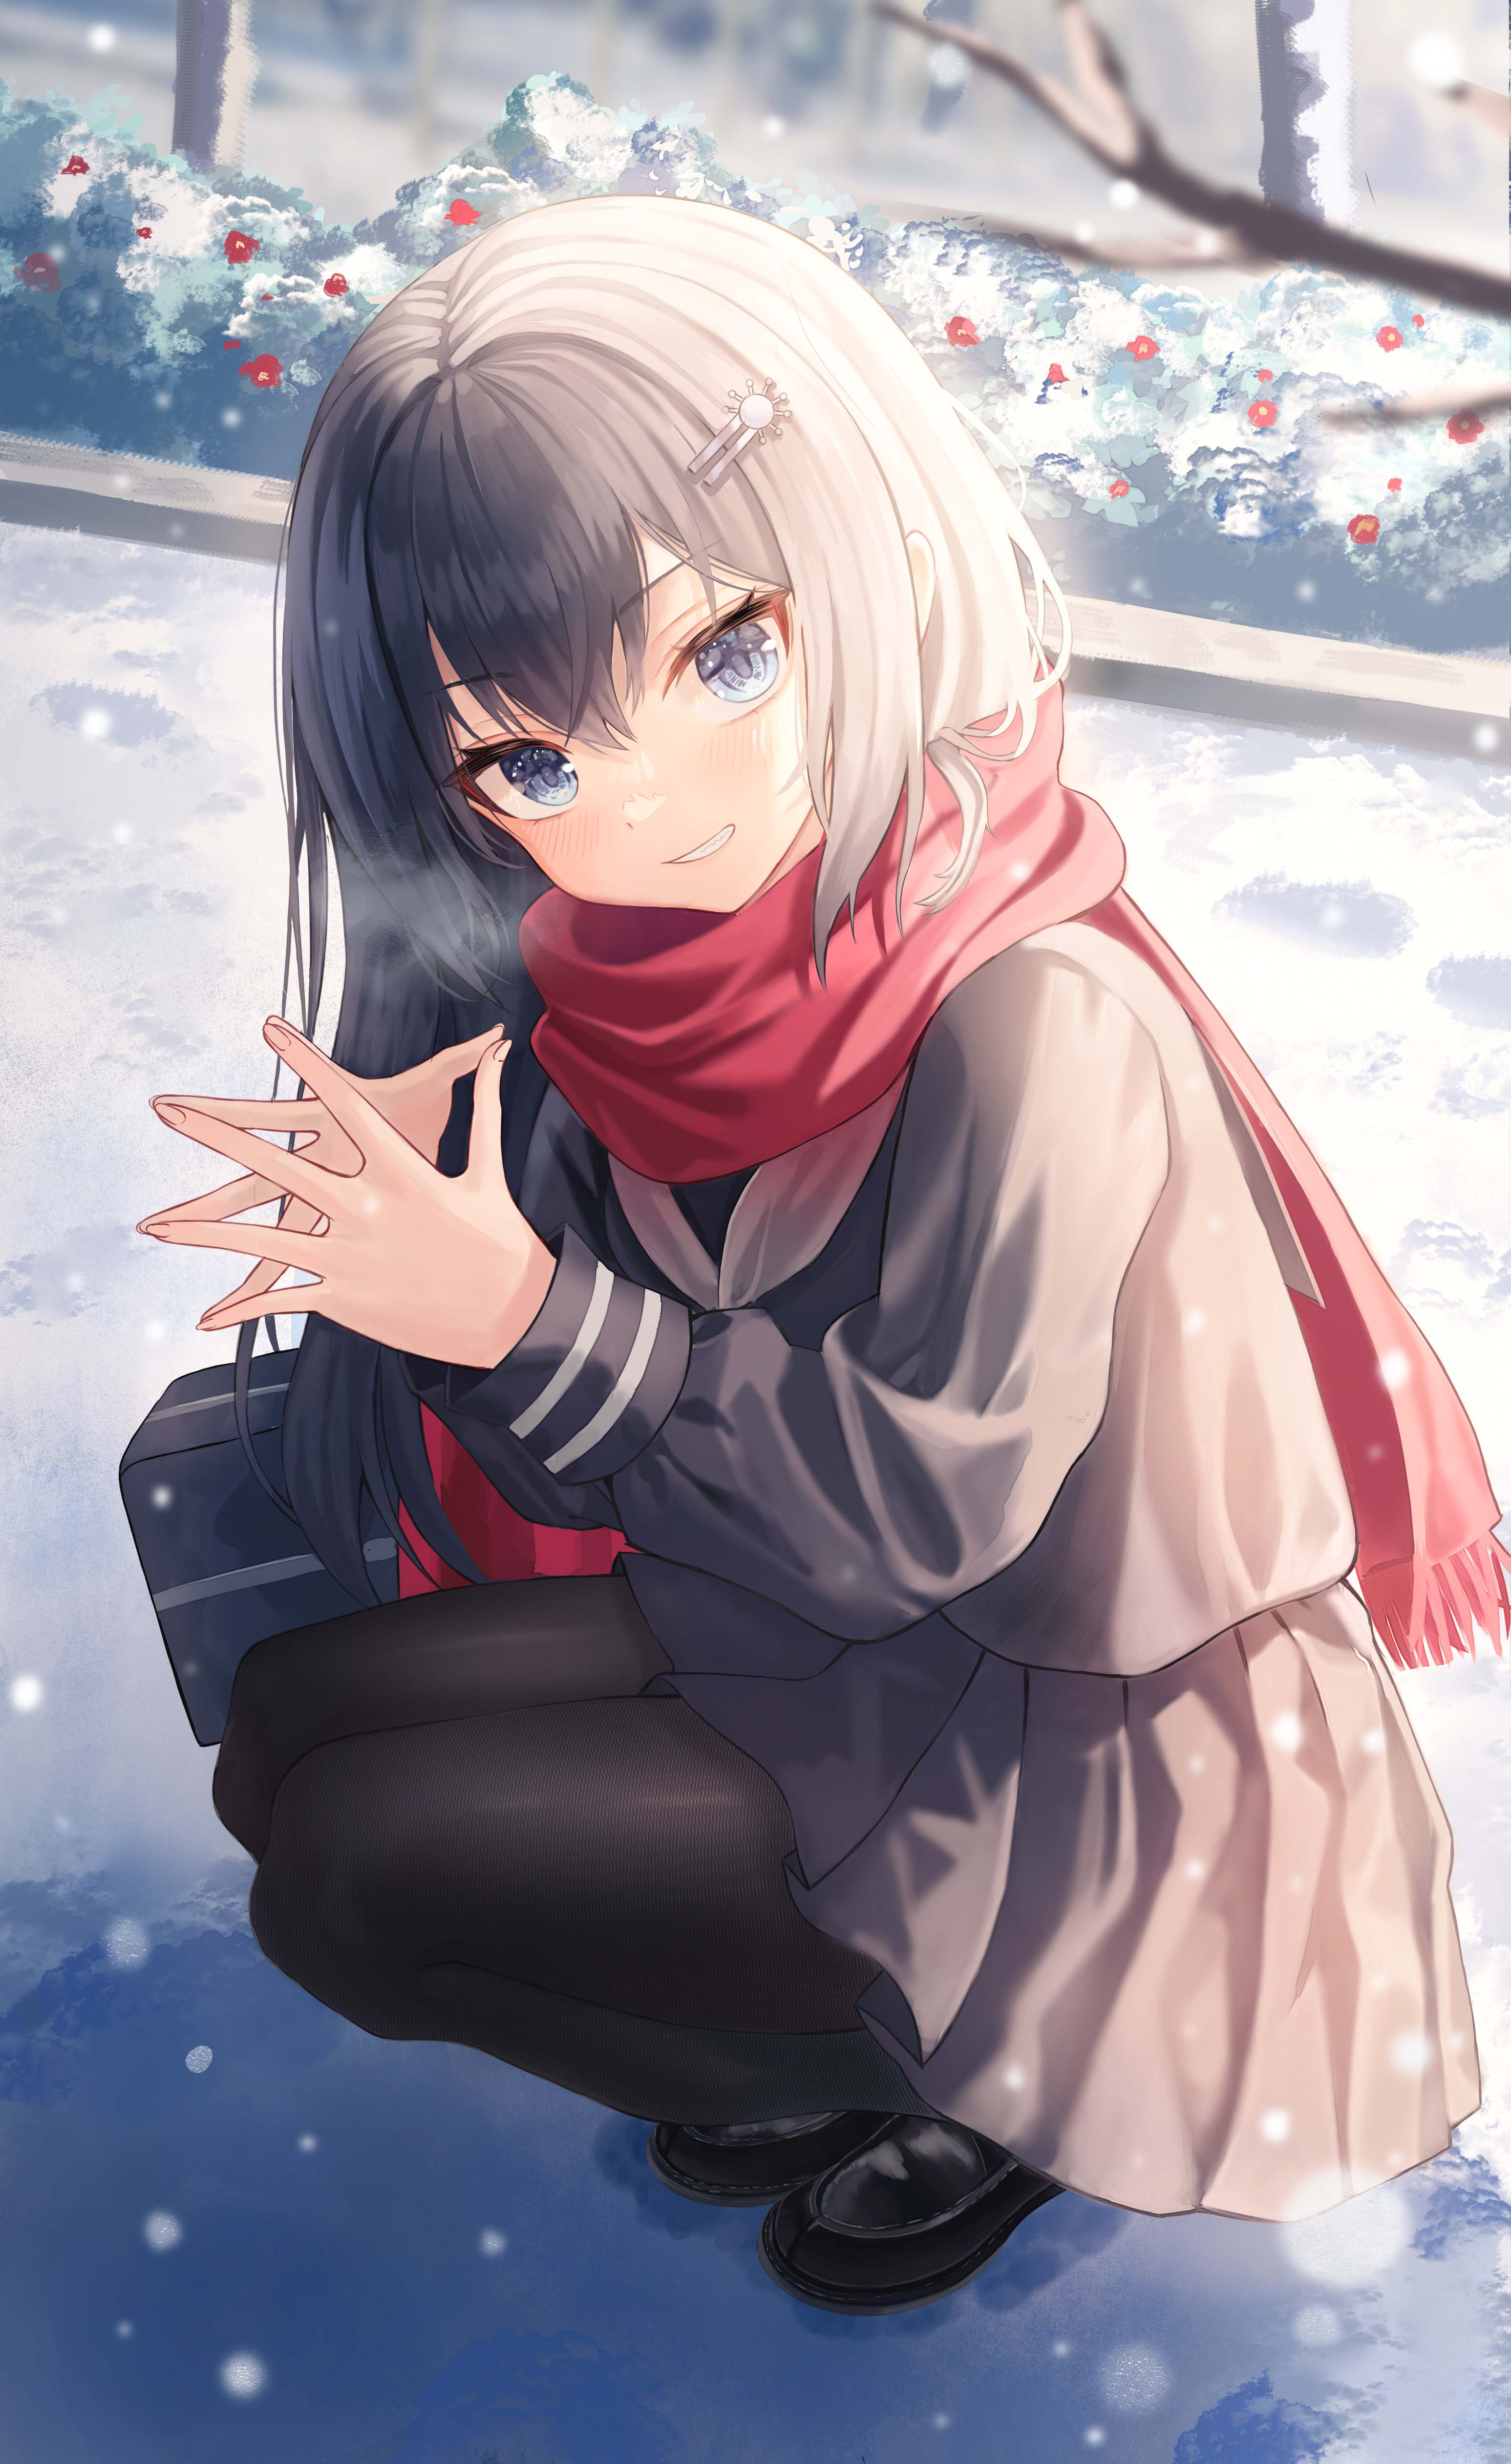 Anime 3093x5045 anime girls blue eyes schoolgirl school uniform squatting scarf